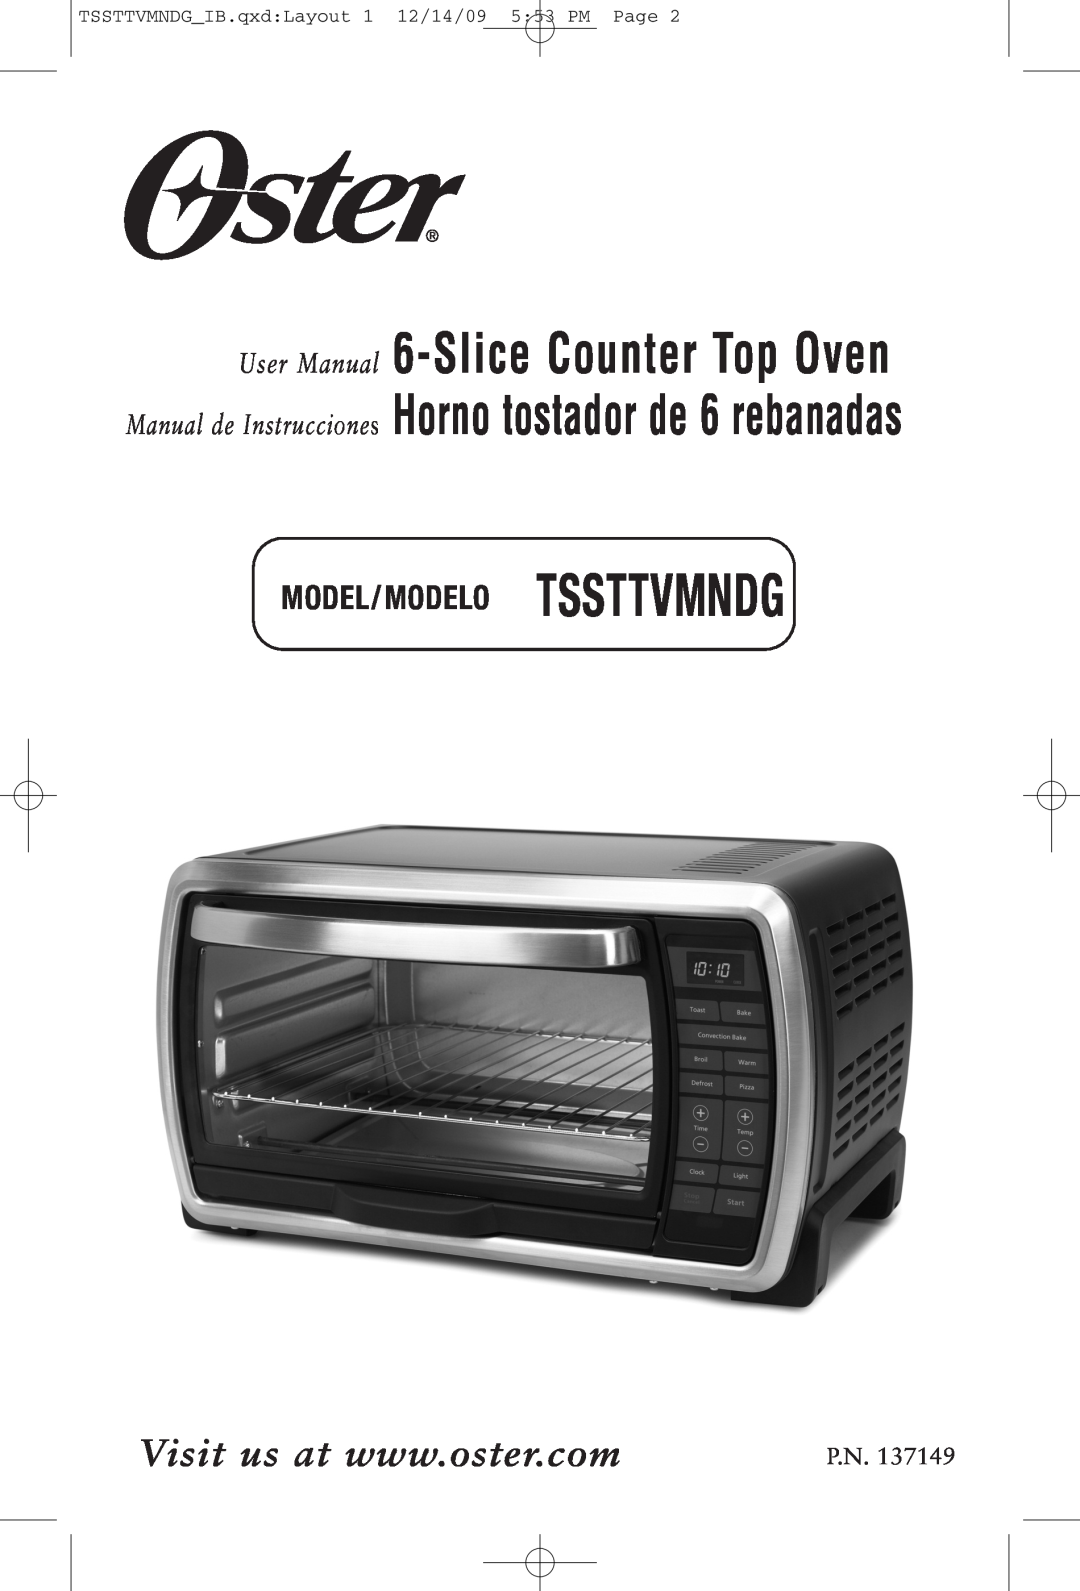 Oster TSSTTVMNDG, 137149 manual Model/Modelo Tssttvmndg, User Man ual, Manual de Instruccion es 